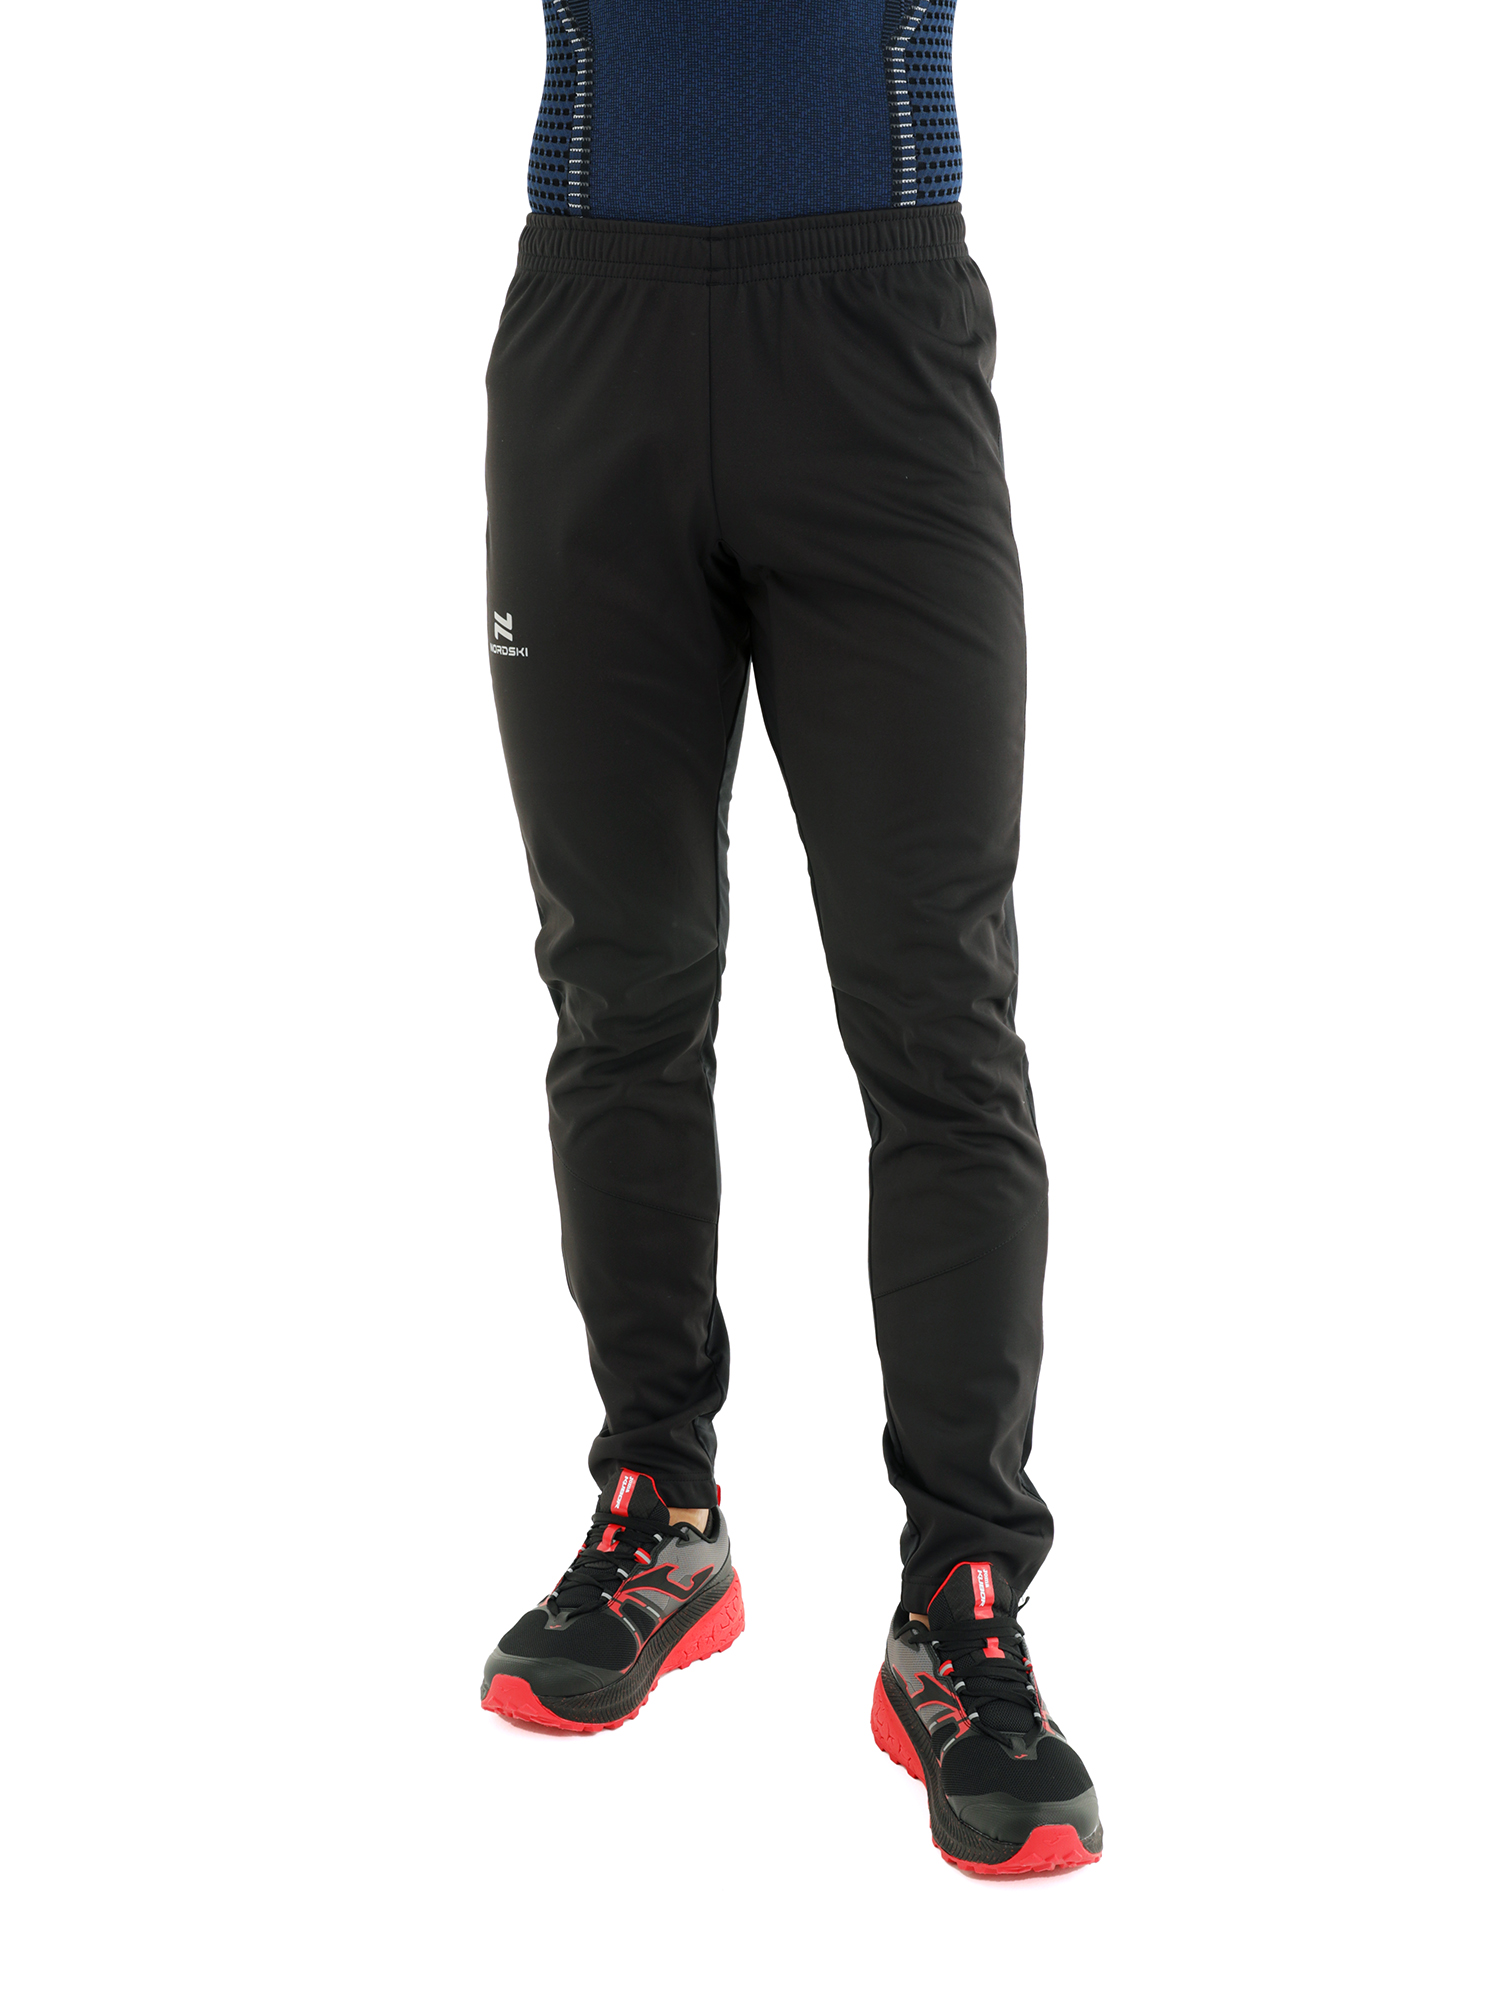 Спортивные брюки мужские NordSki Nsm520100 черные S